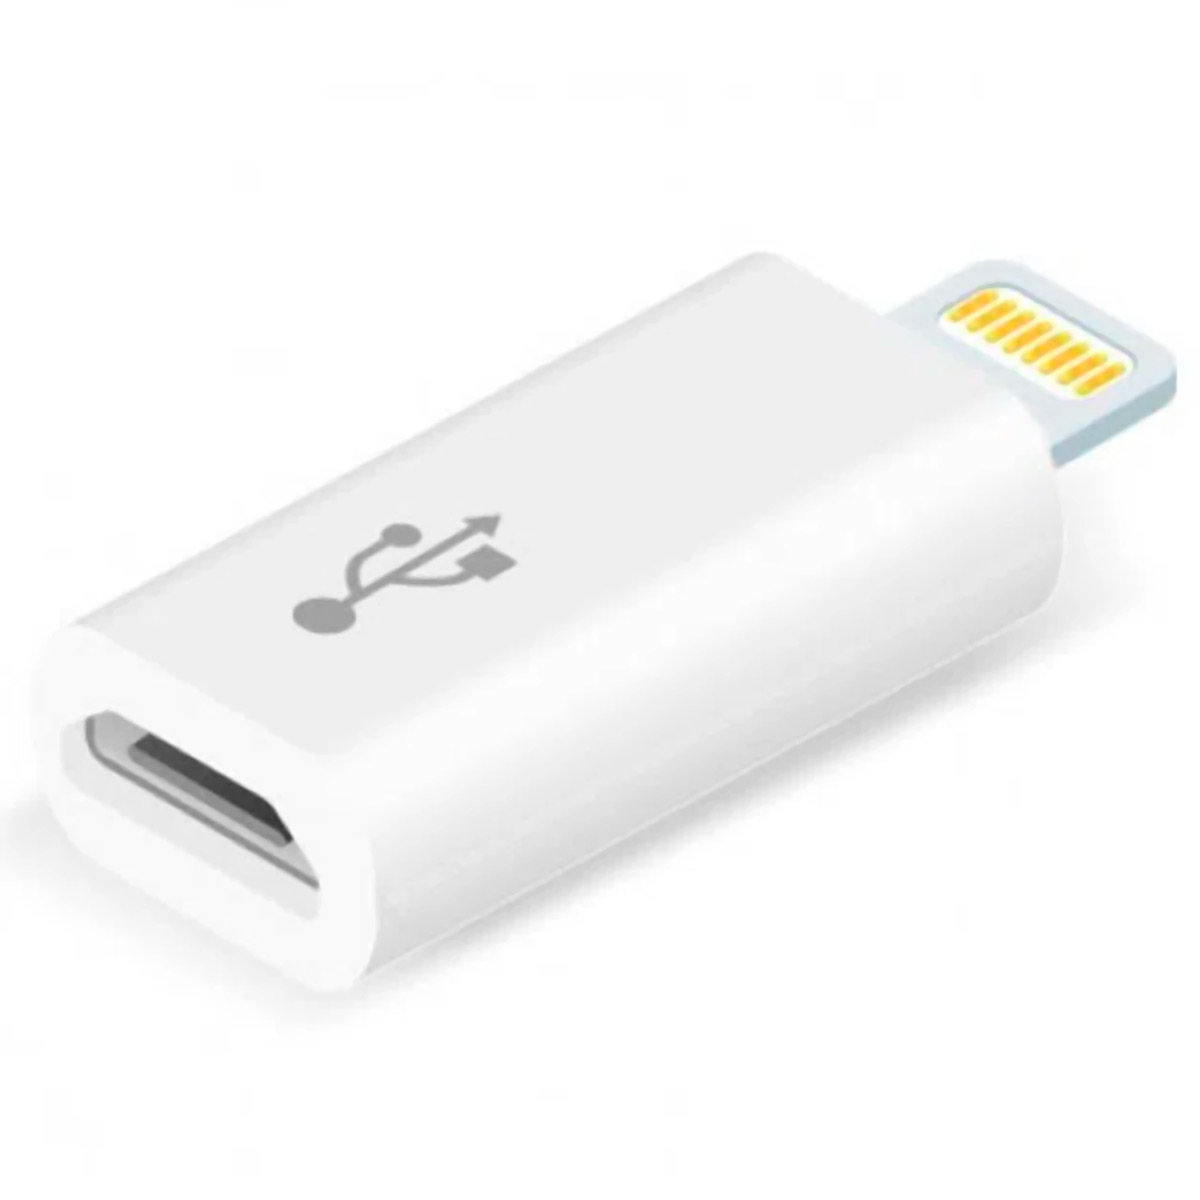 Conversor Lightning para Micro USB - Para iPhone, iPad e iPod - Comtac 9282